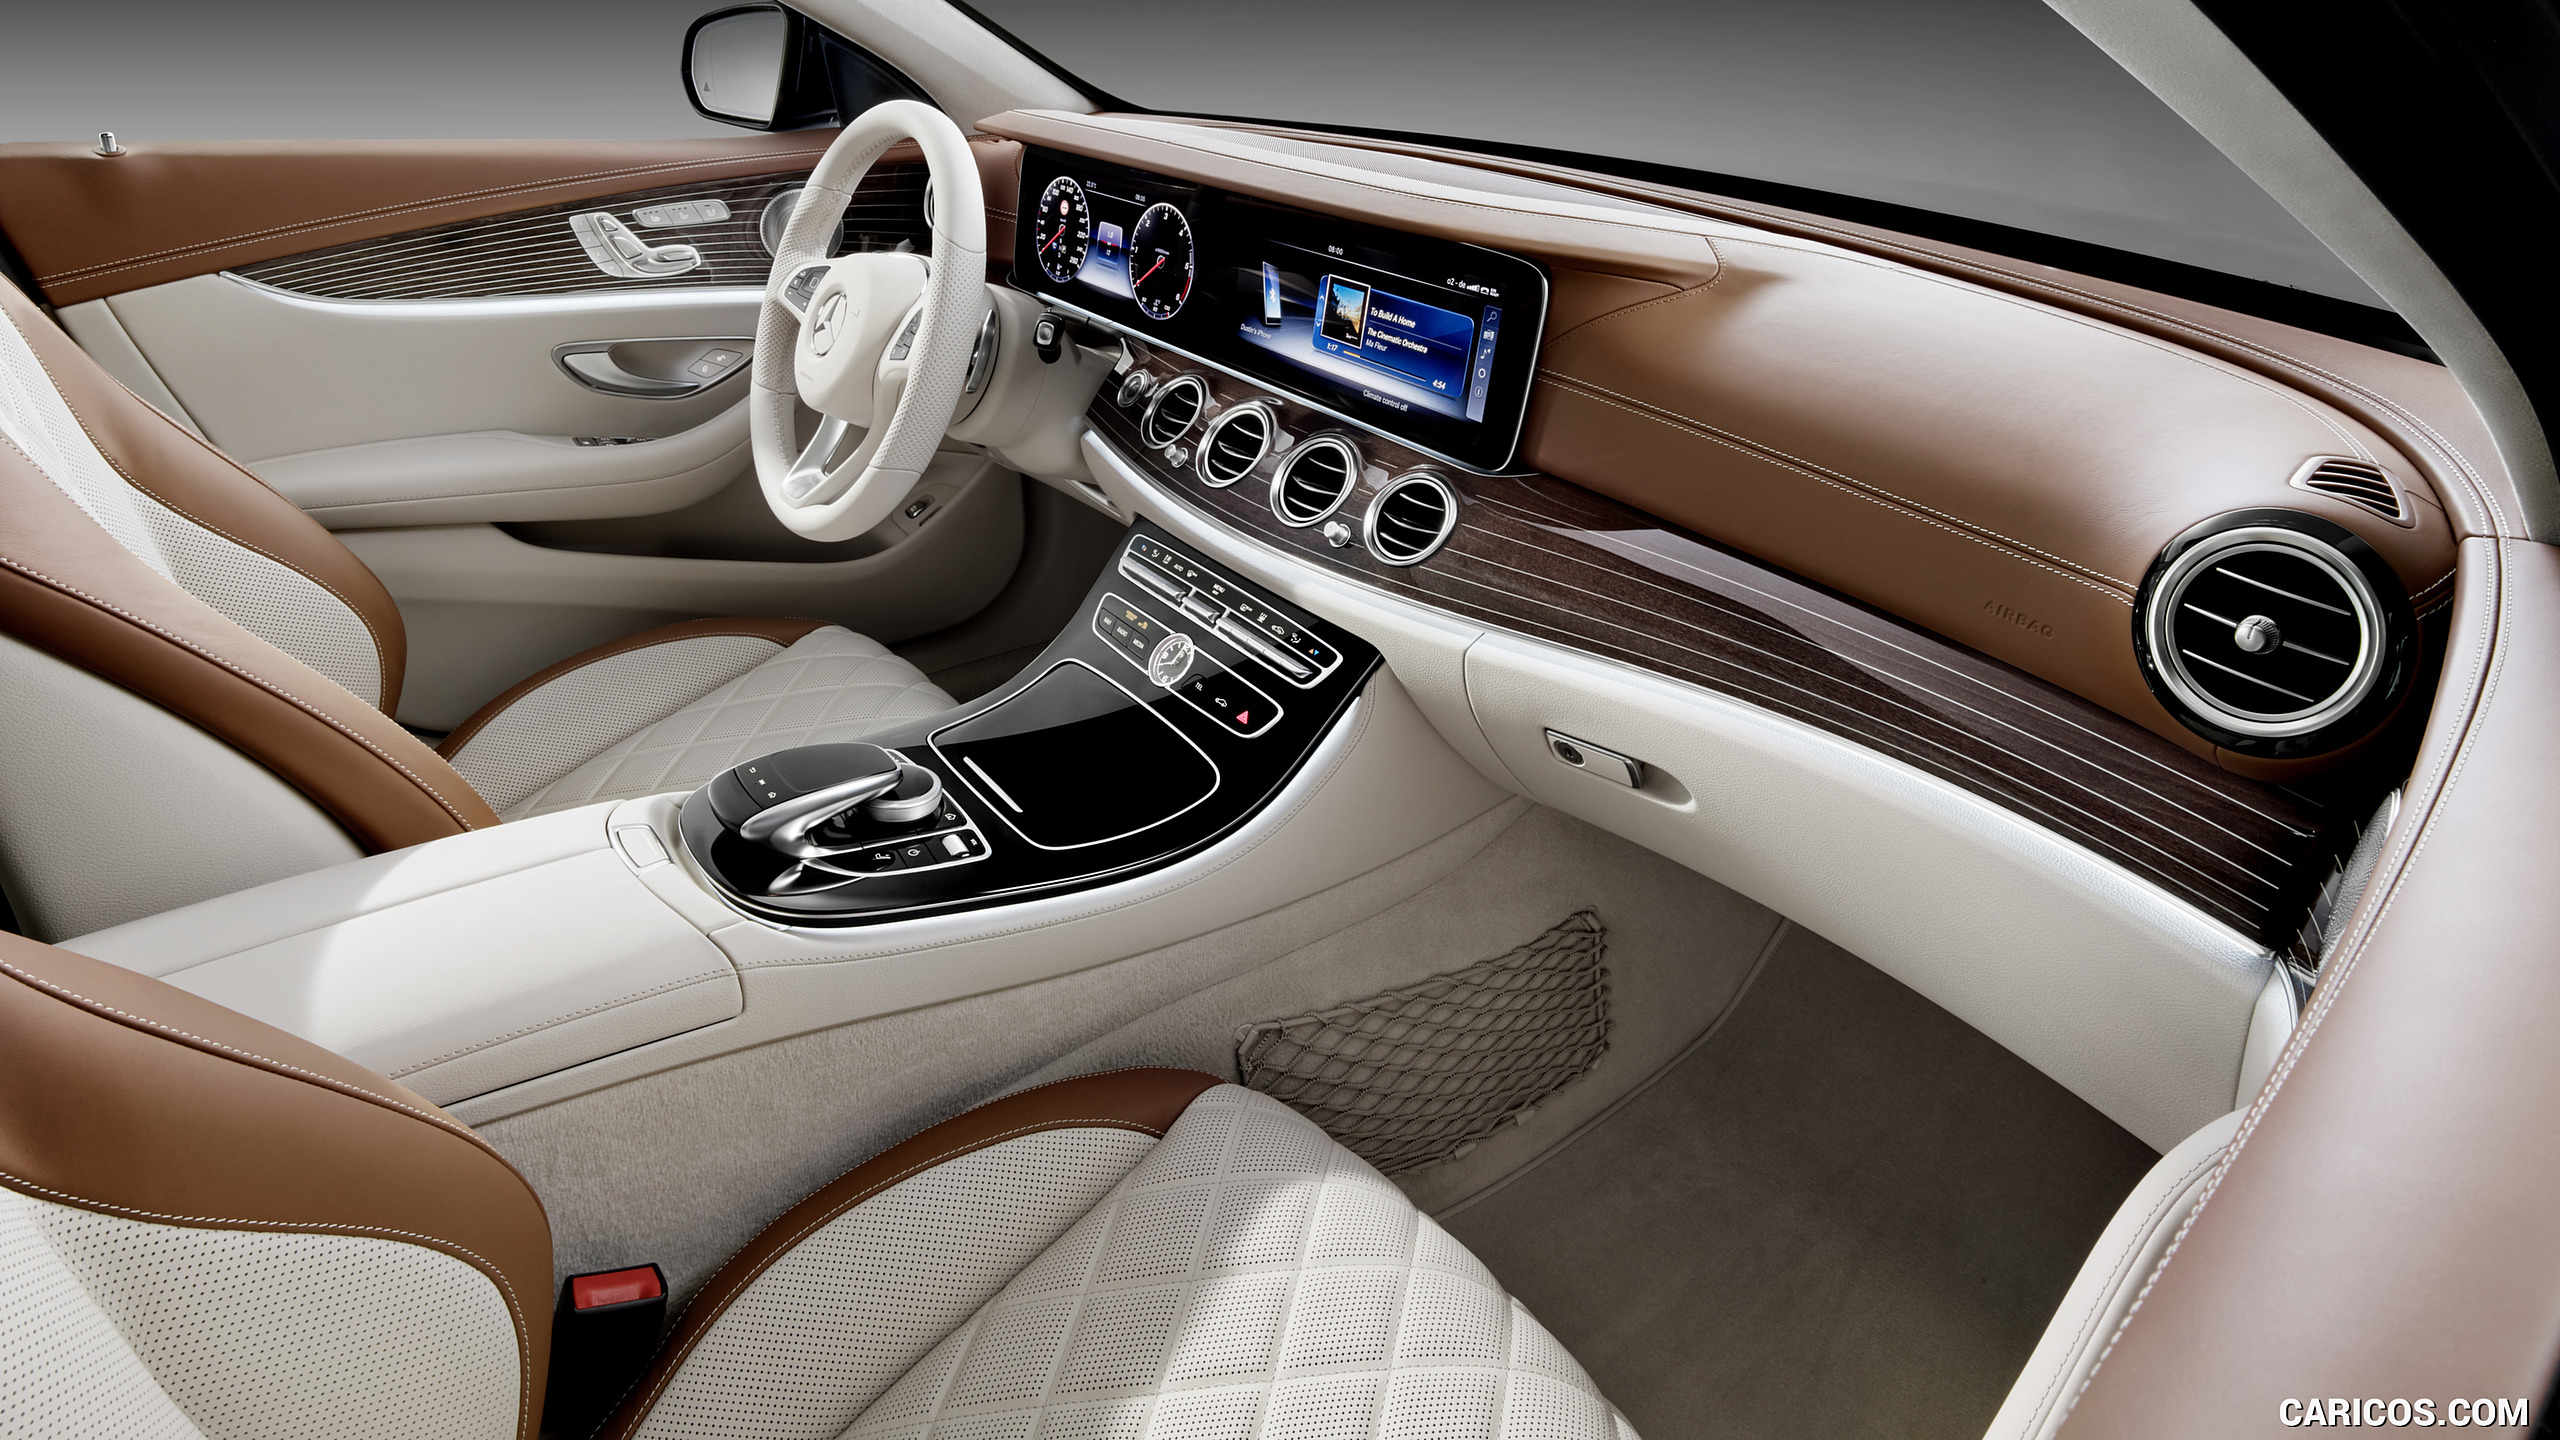 2017 Mercedes-Benz E-Class Estate Exclusive Line - Macchiato Beige / Saddle Brown - Interior, Front Seats, #50 of 110